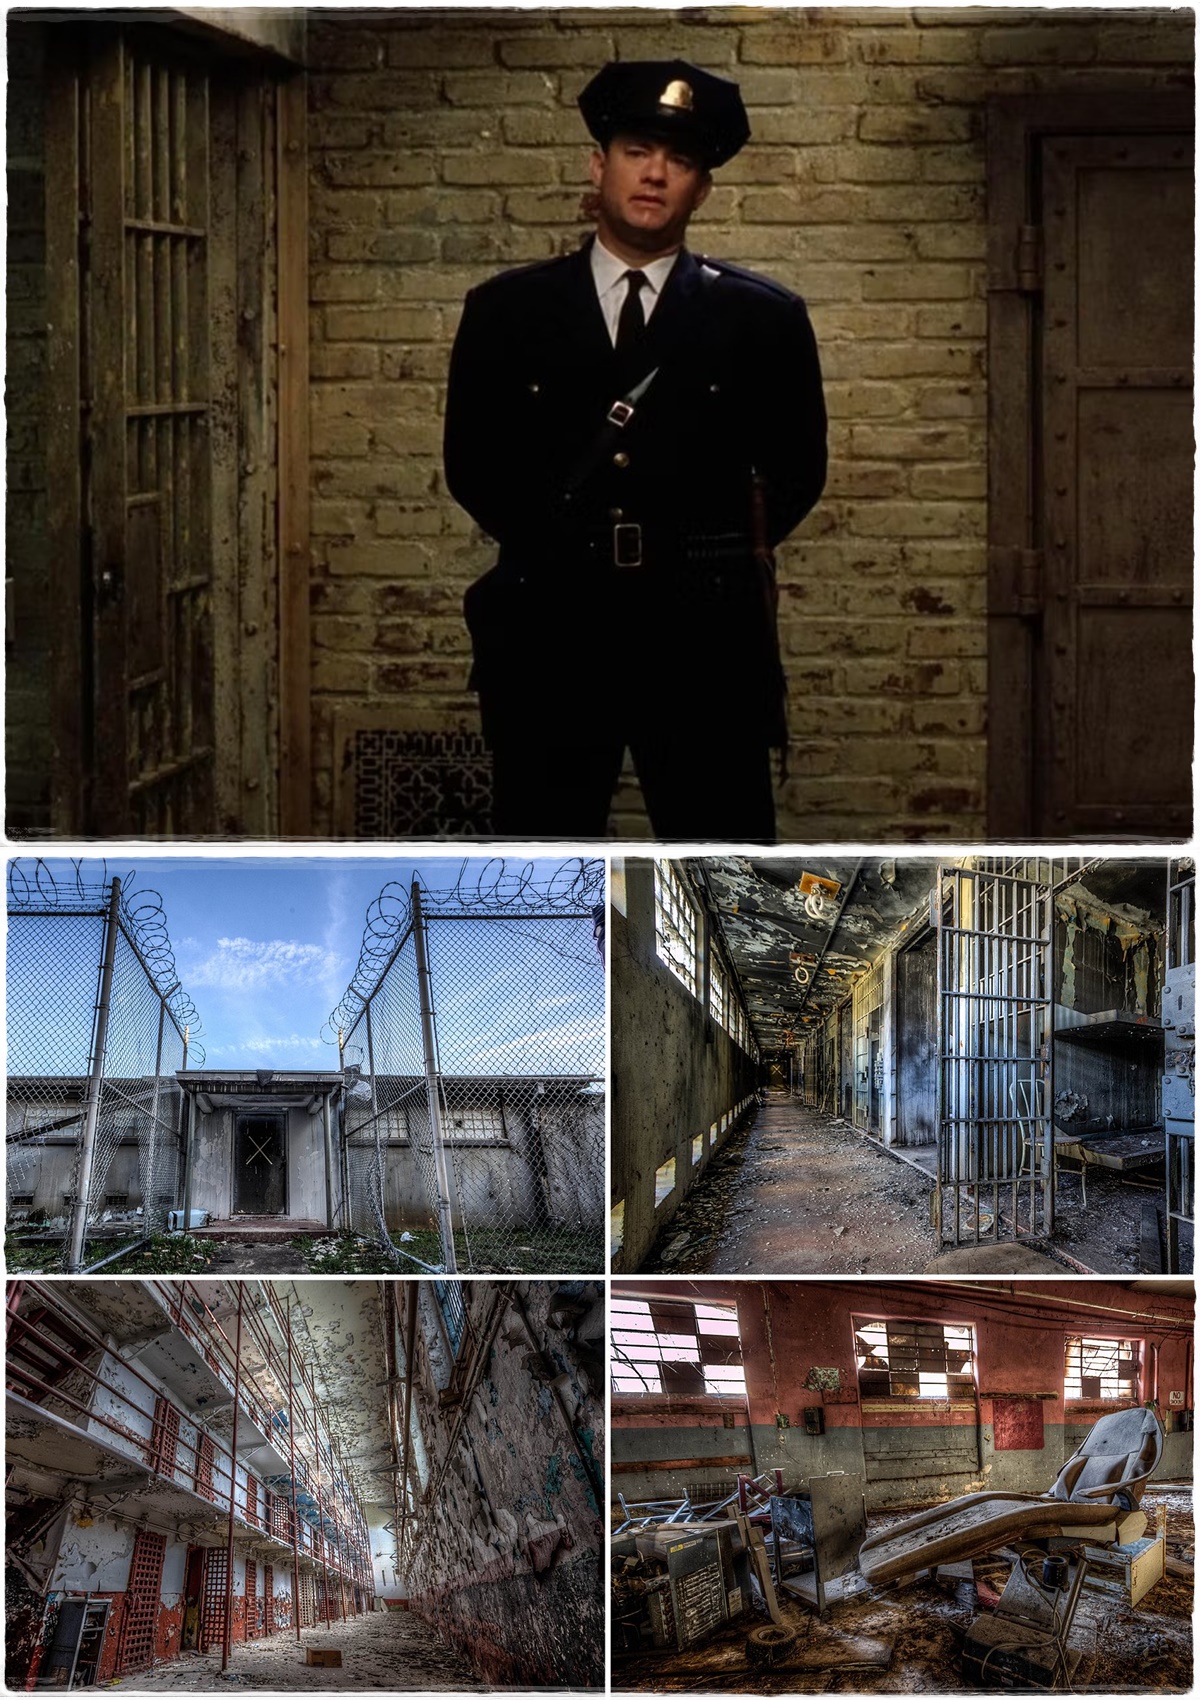 Így néz ki napjainkban az a börtön, ahol a Halálsoron című filmet forgatták